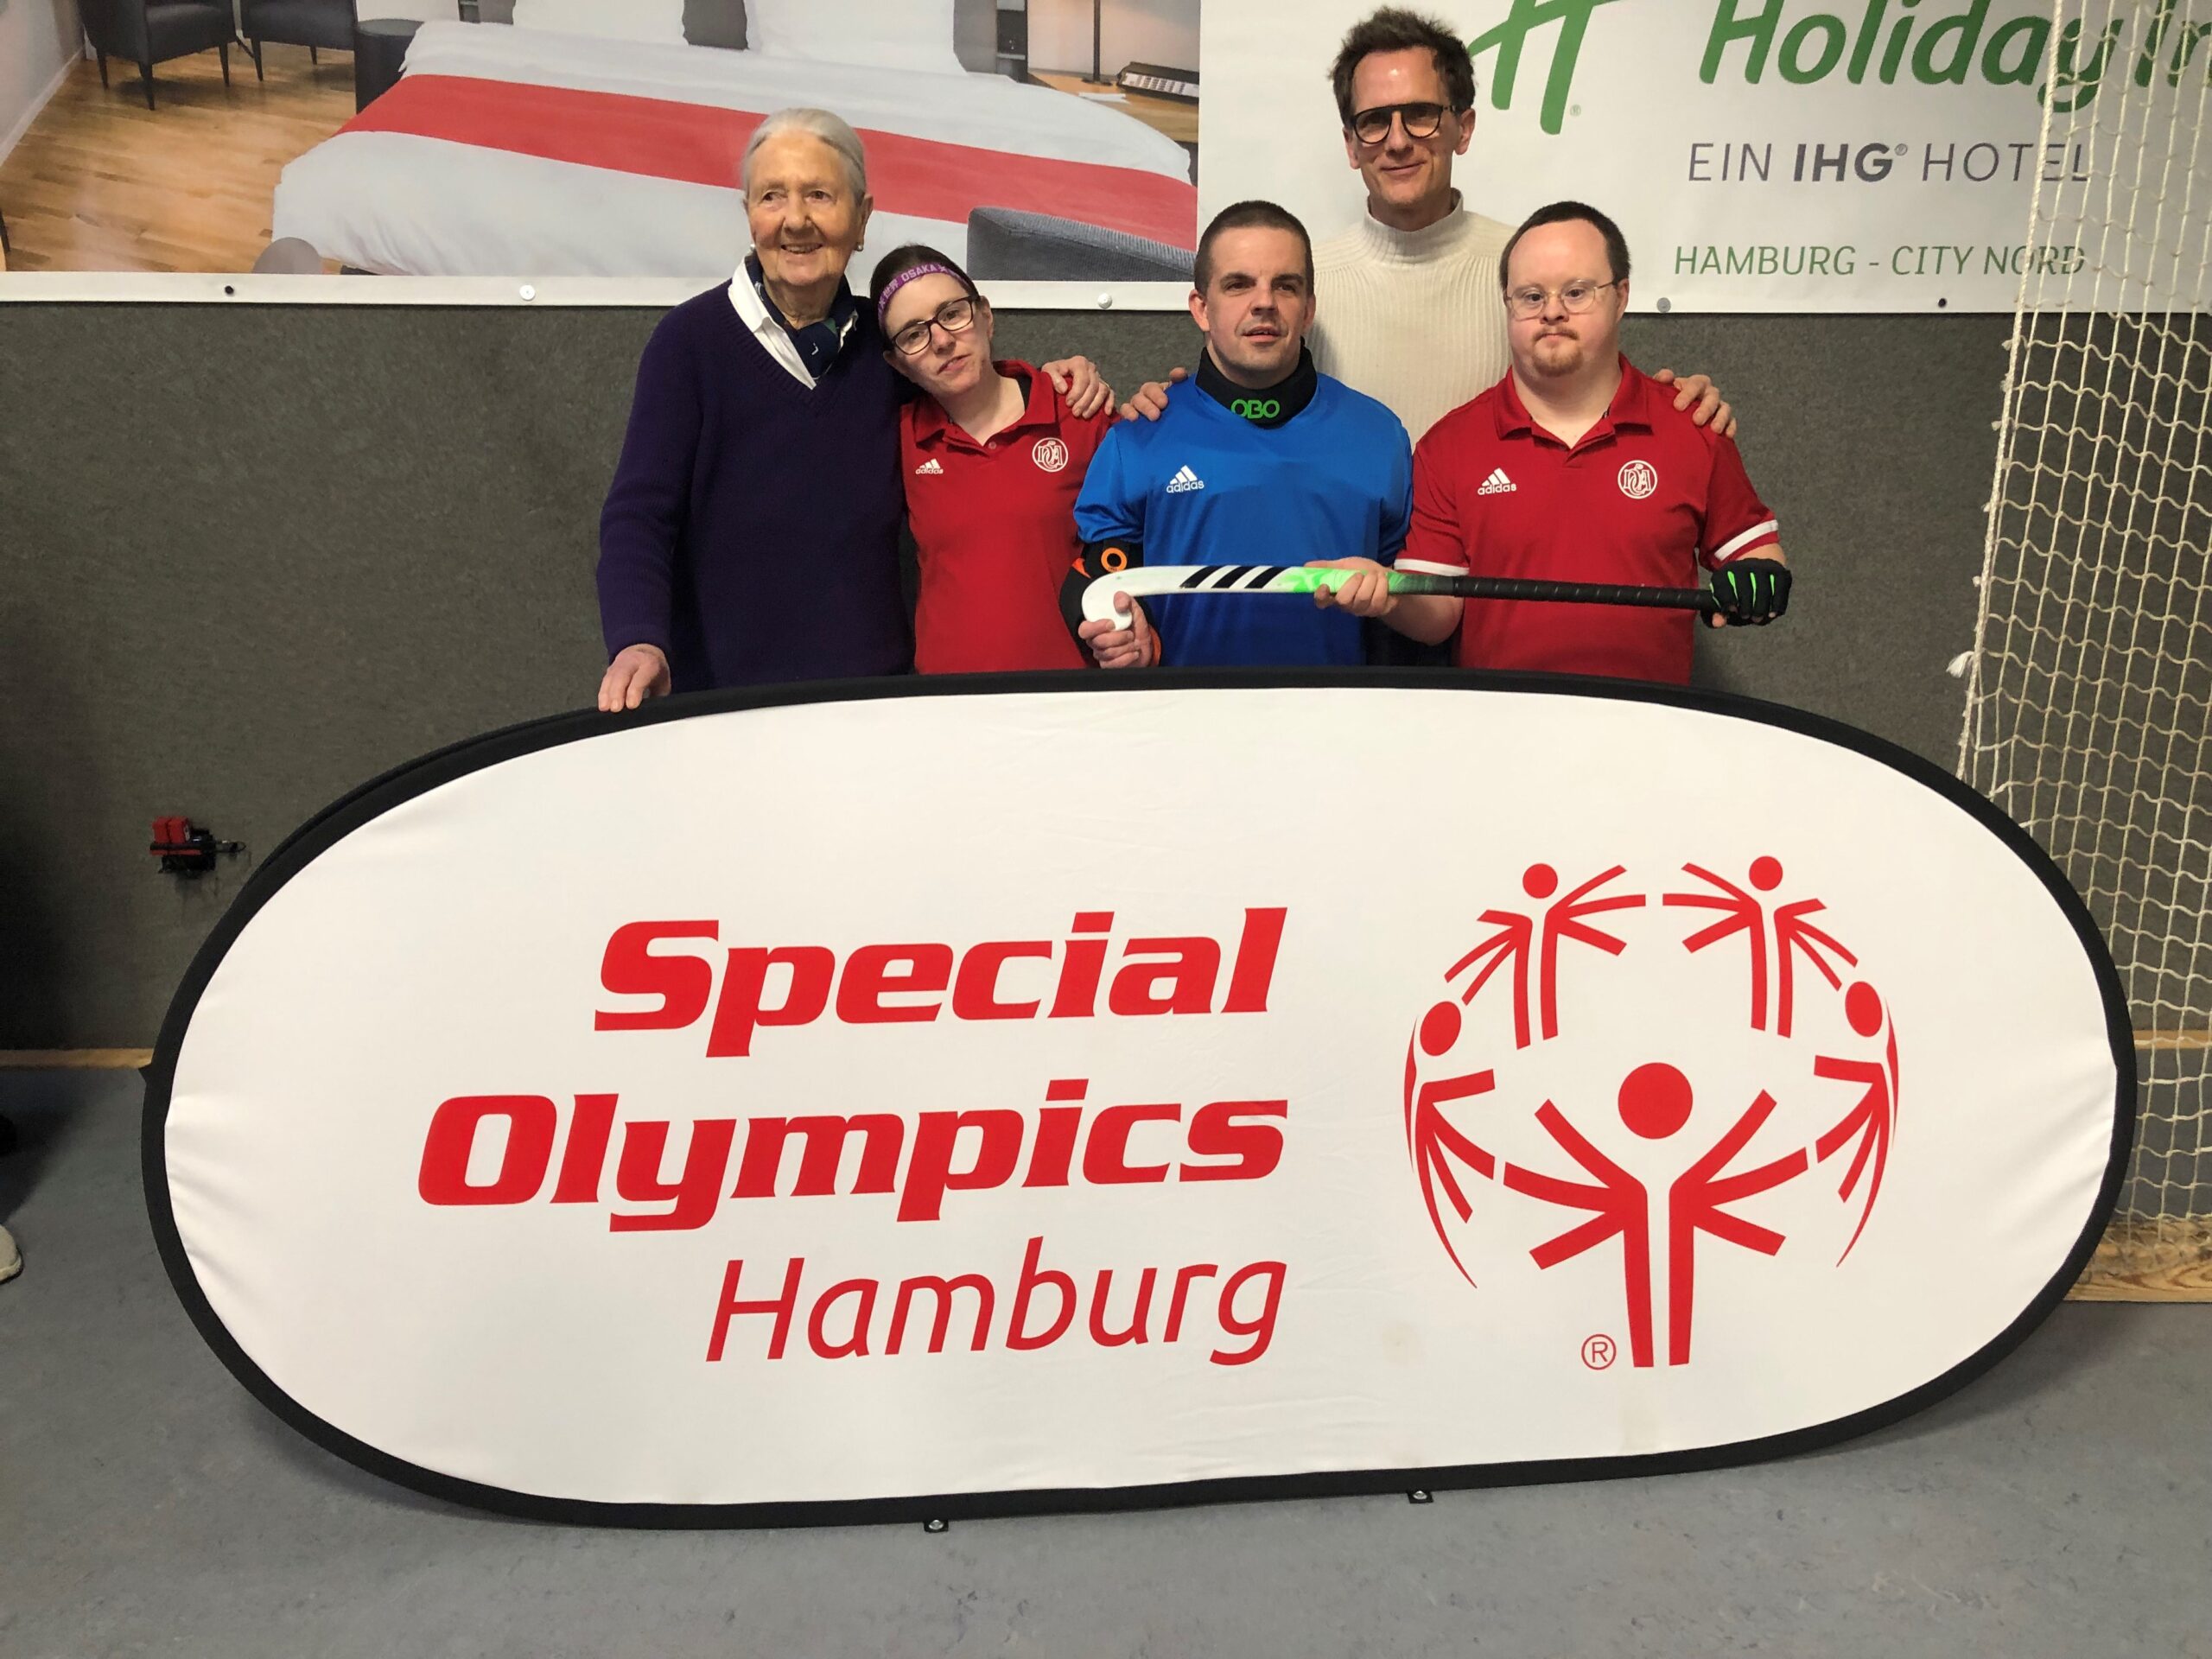 Greta Blunk und Hockeyspieler:inenn stehen hinter einem großen Banner von Special Olympics Hamburg.